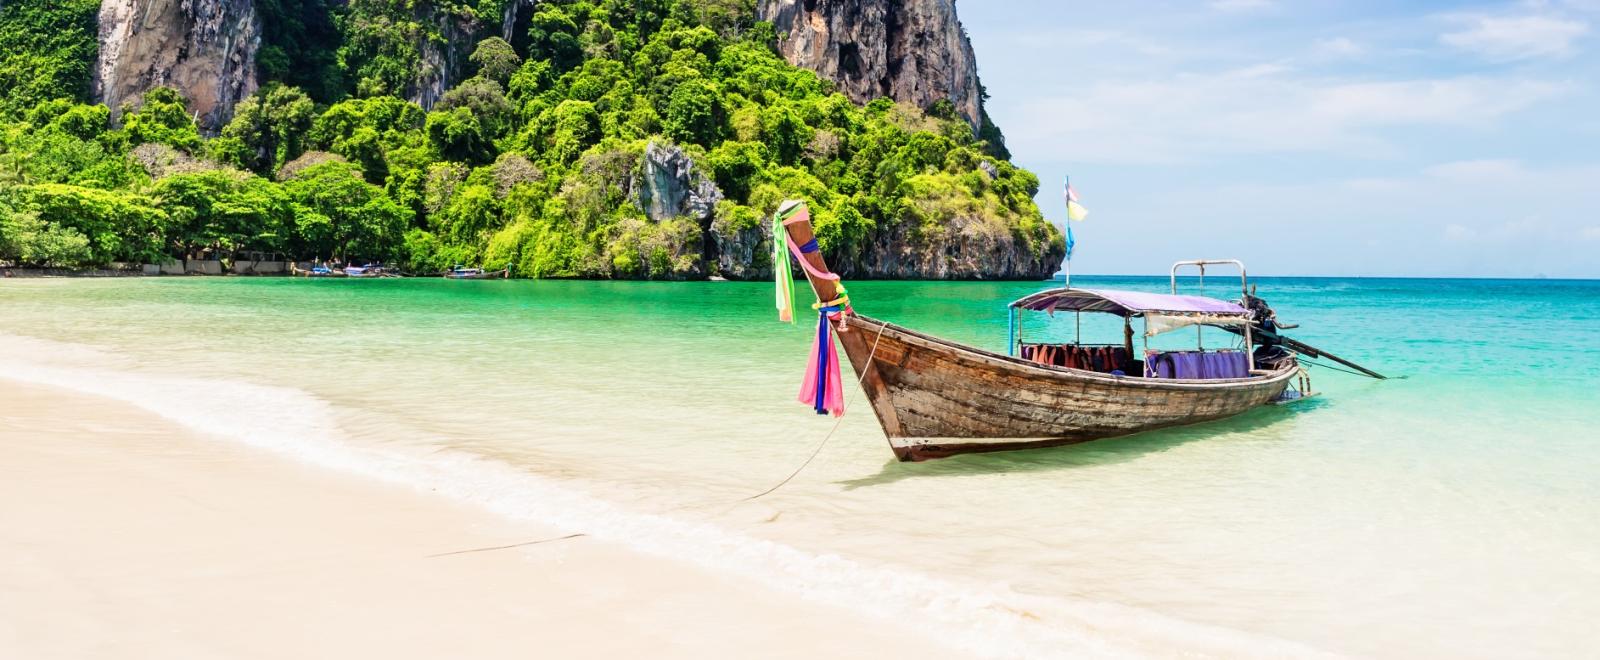 Explore Thailand